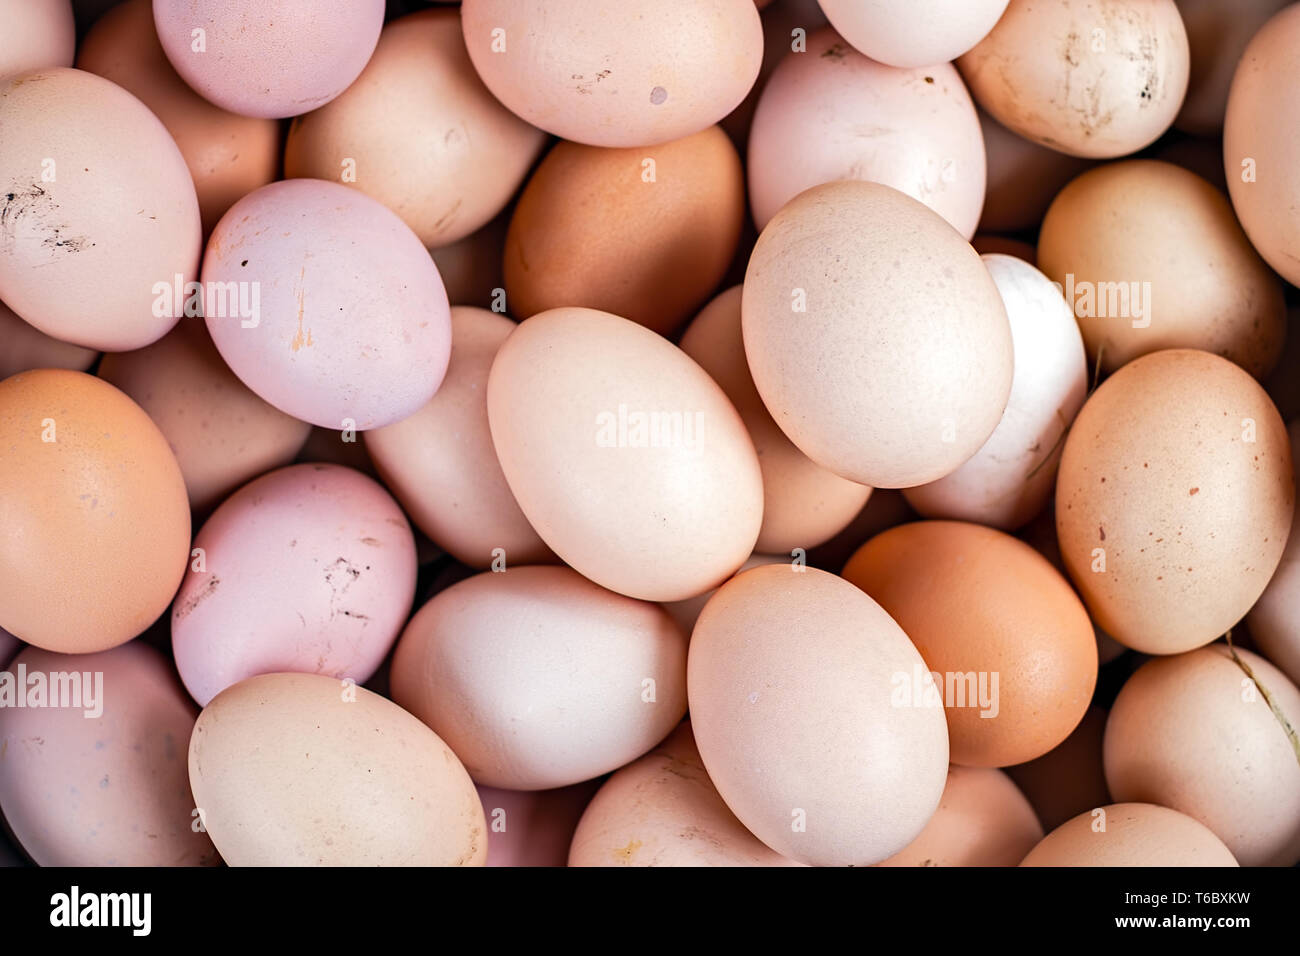 Bündel von frischem huhn eier gesammelt Stockfoto